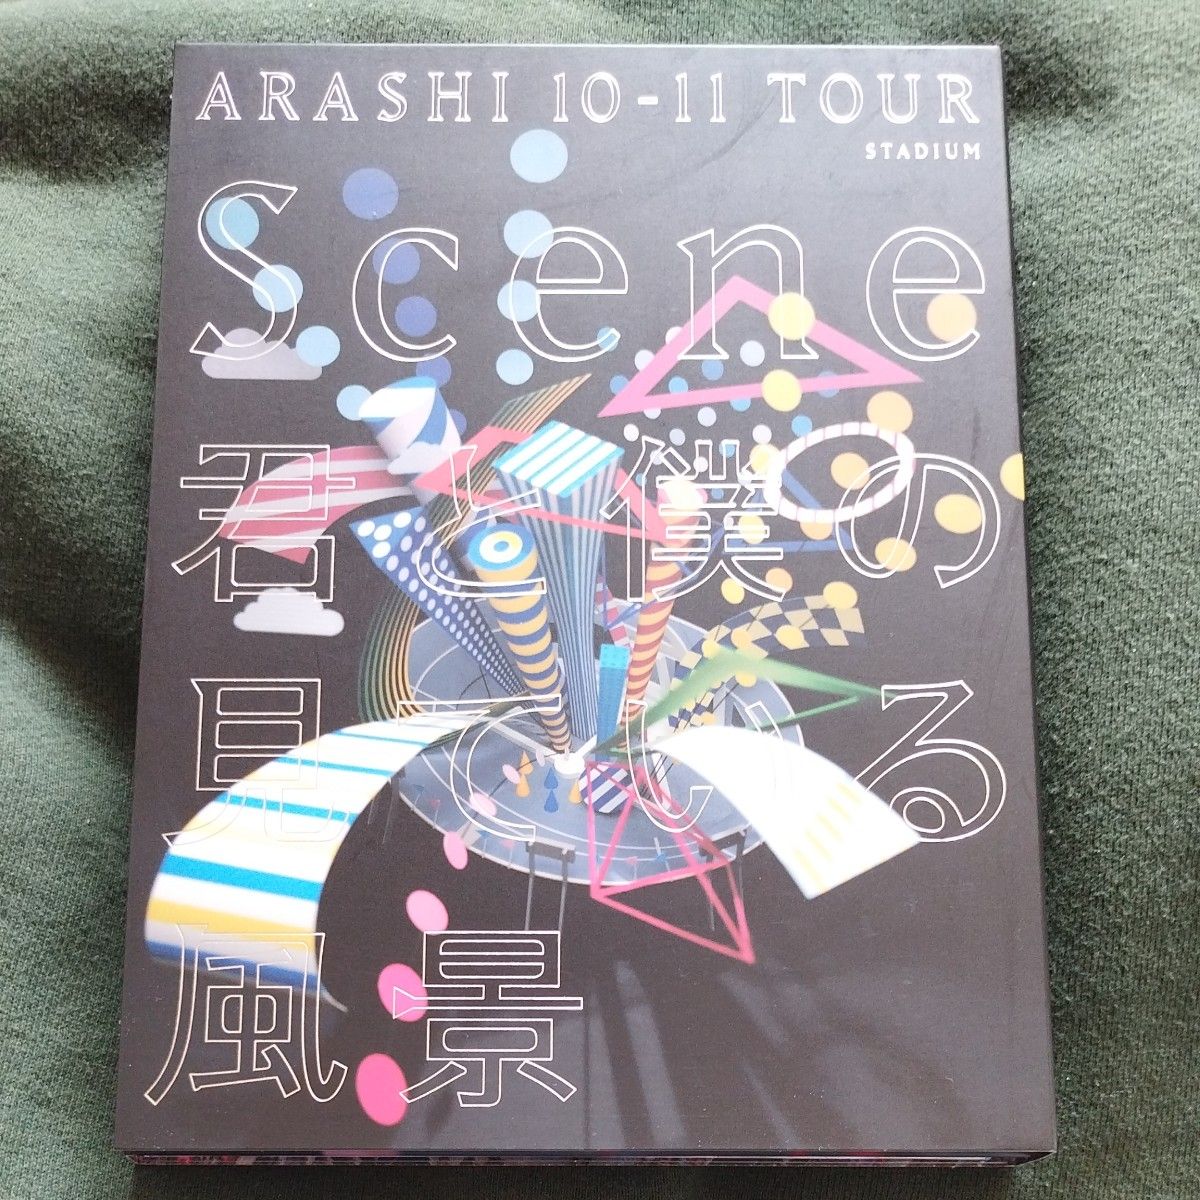 嵐 「ARASHI 10-11 TOUR Scene~君と僕の見ている風景 stadium~ 初回盤」 フォトブック付